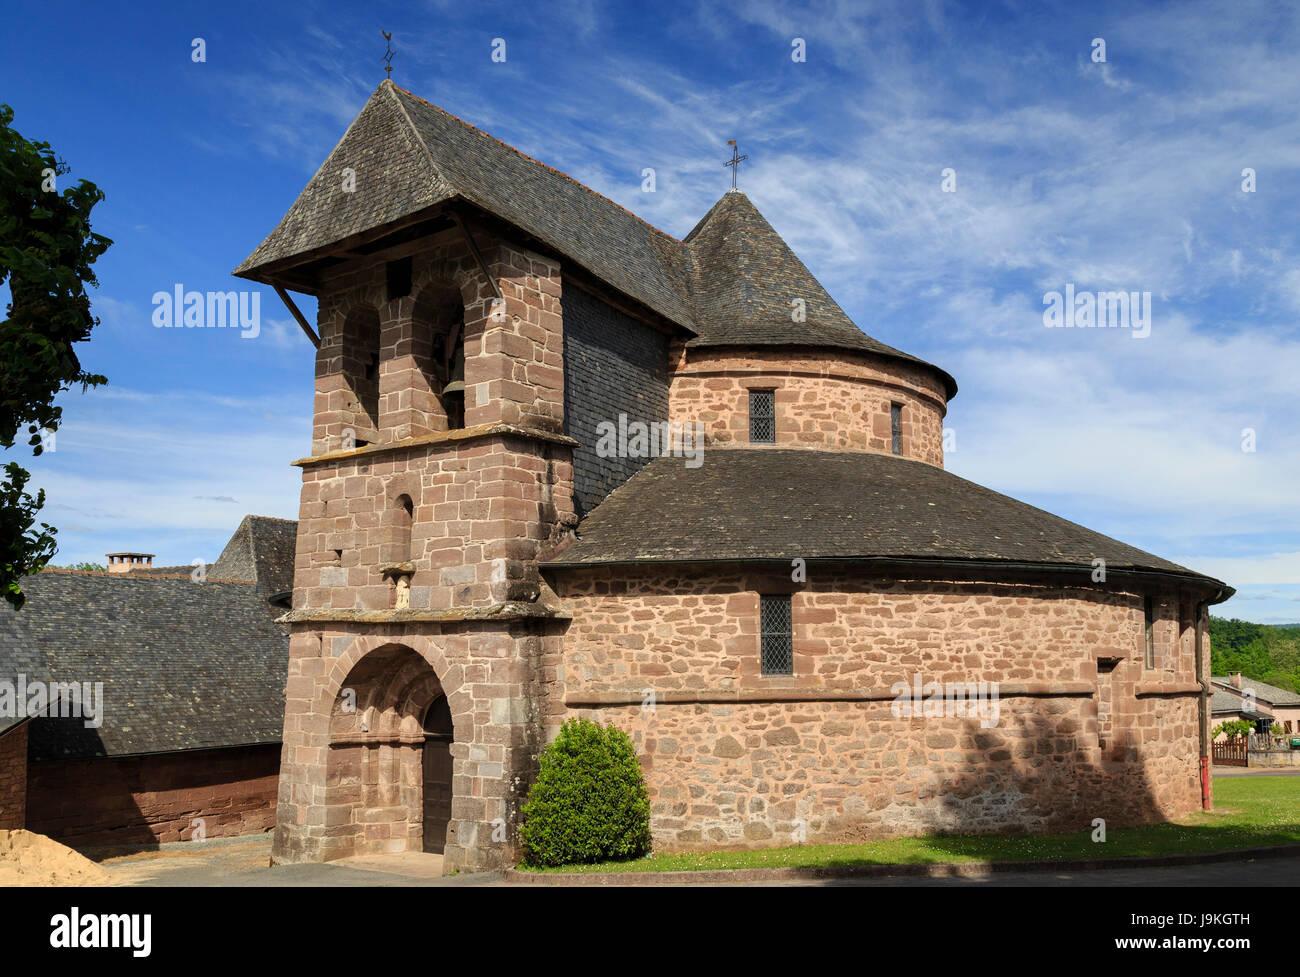 Francia, Correze, Saint Bonnet la riviere, chiesa rotonda ispirata al Santo Sepolcro Foto Stock